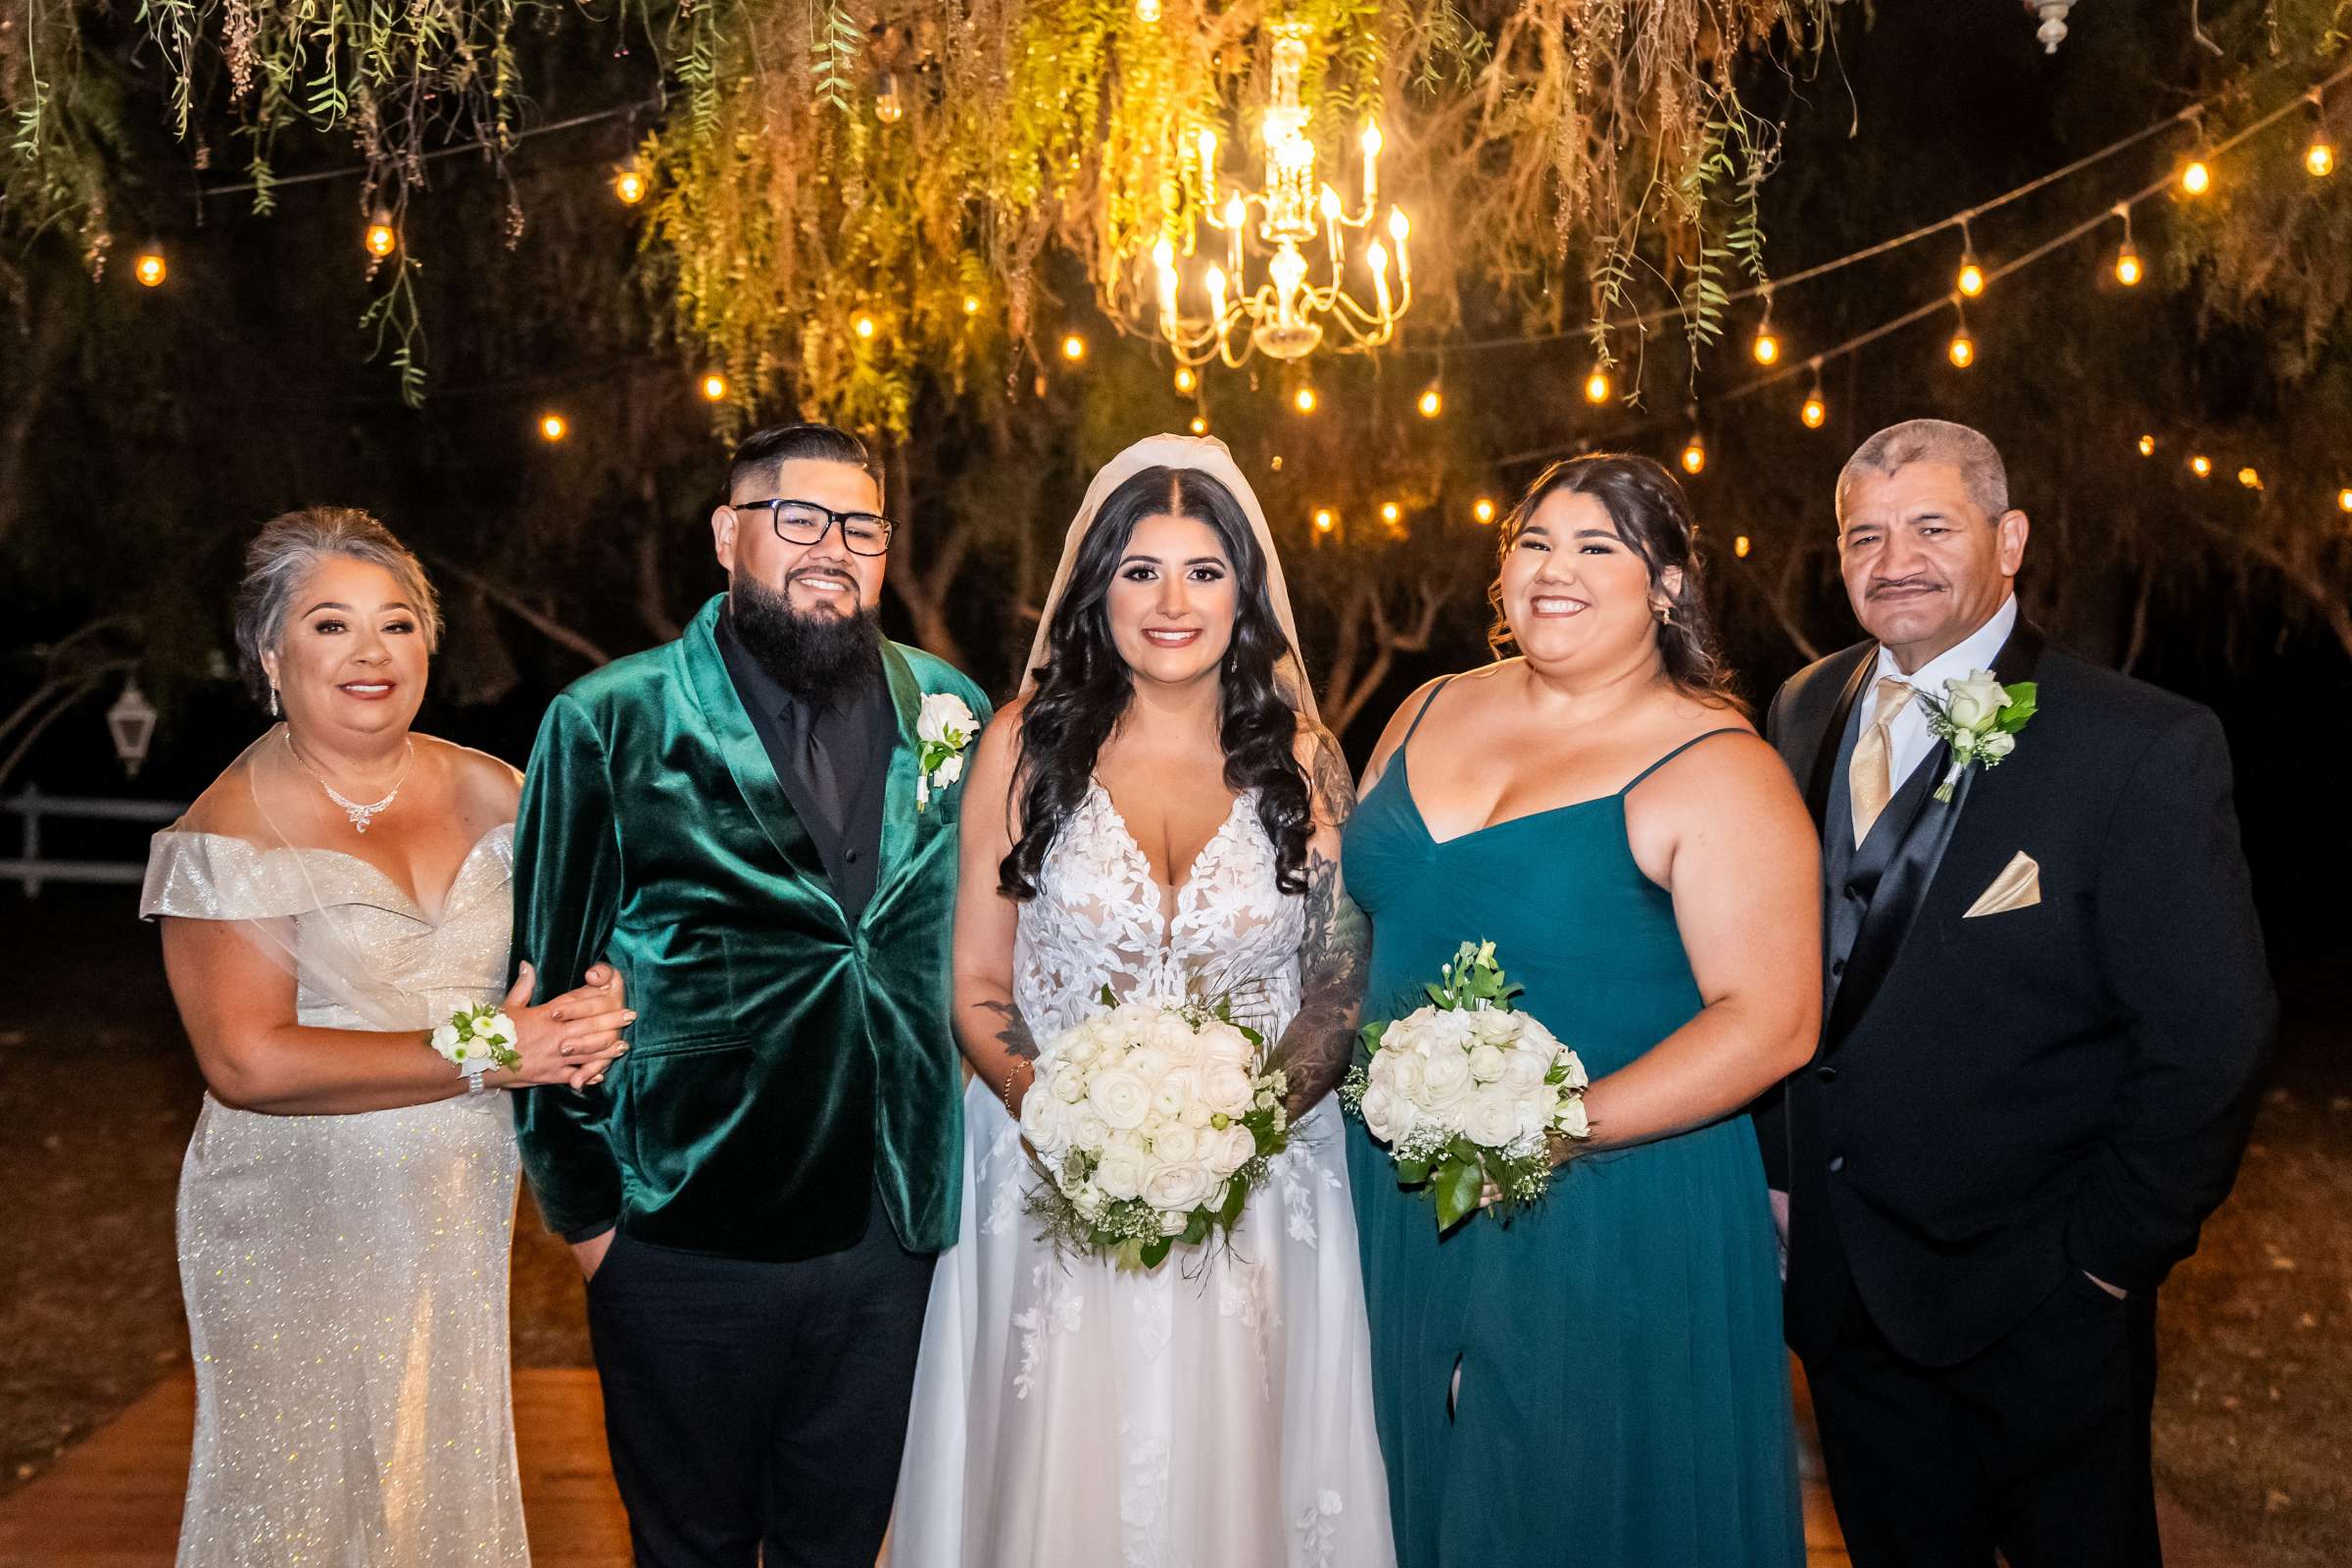 La Hacienda Wedding, Ashley and Alvaro Wedding Photo #26 by True Photography